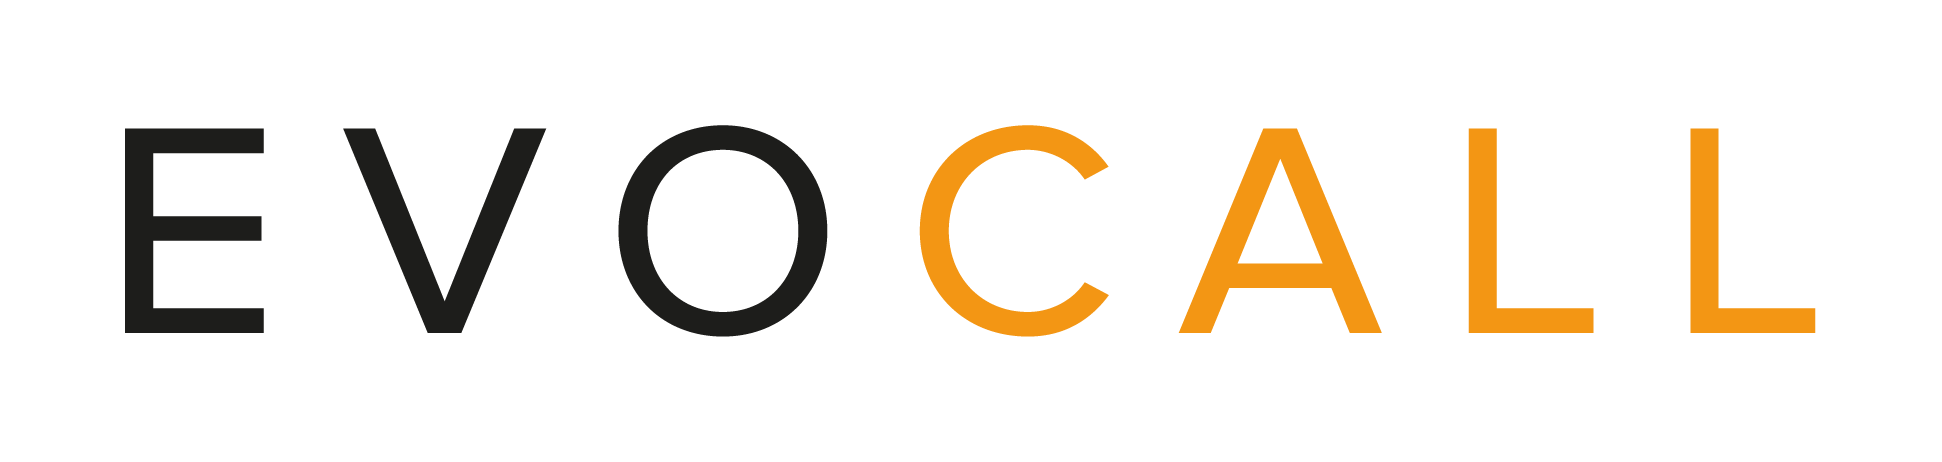 EVOVCALL Logo